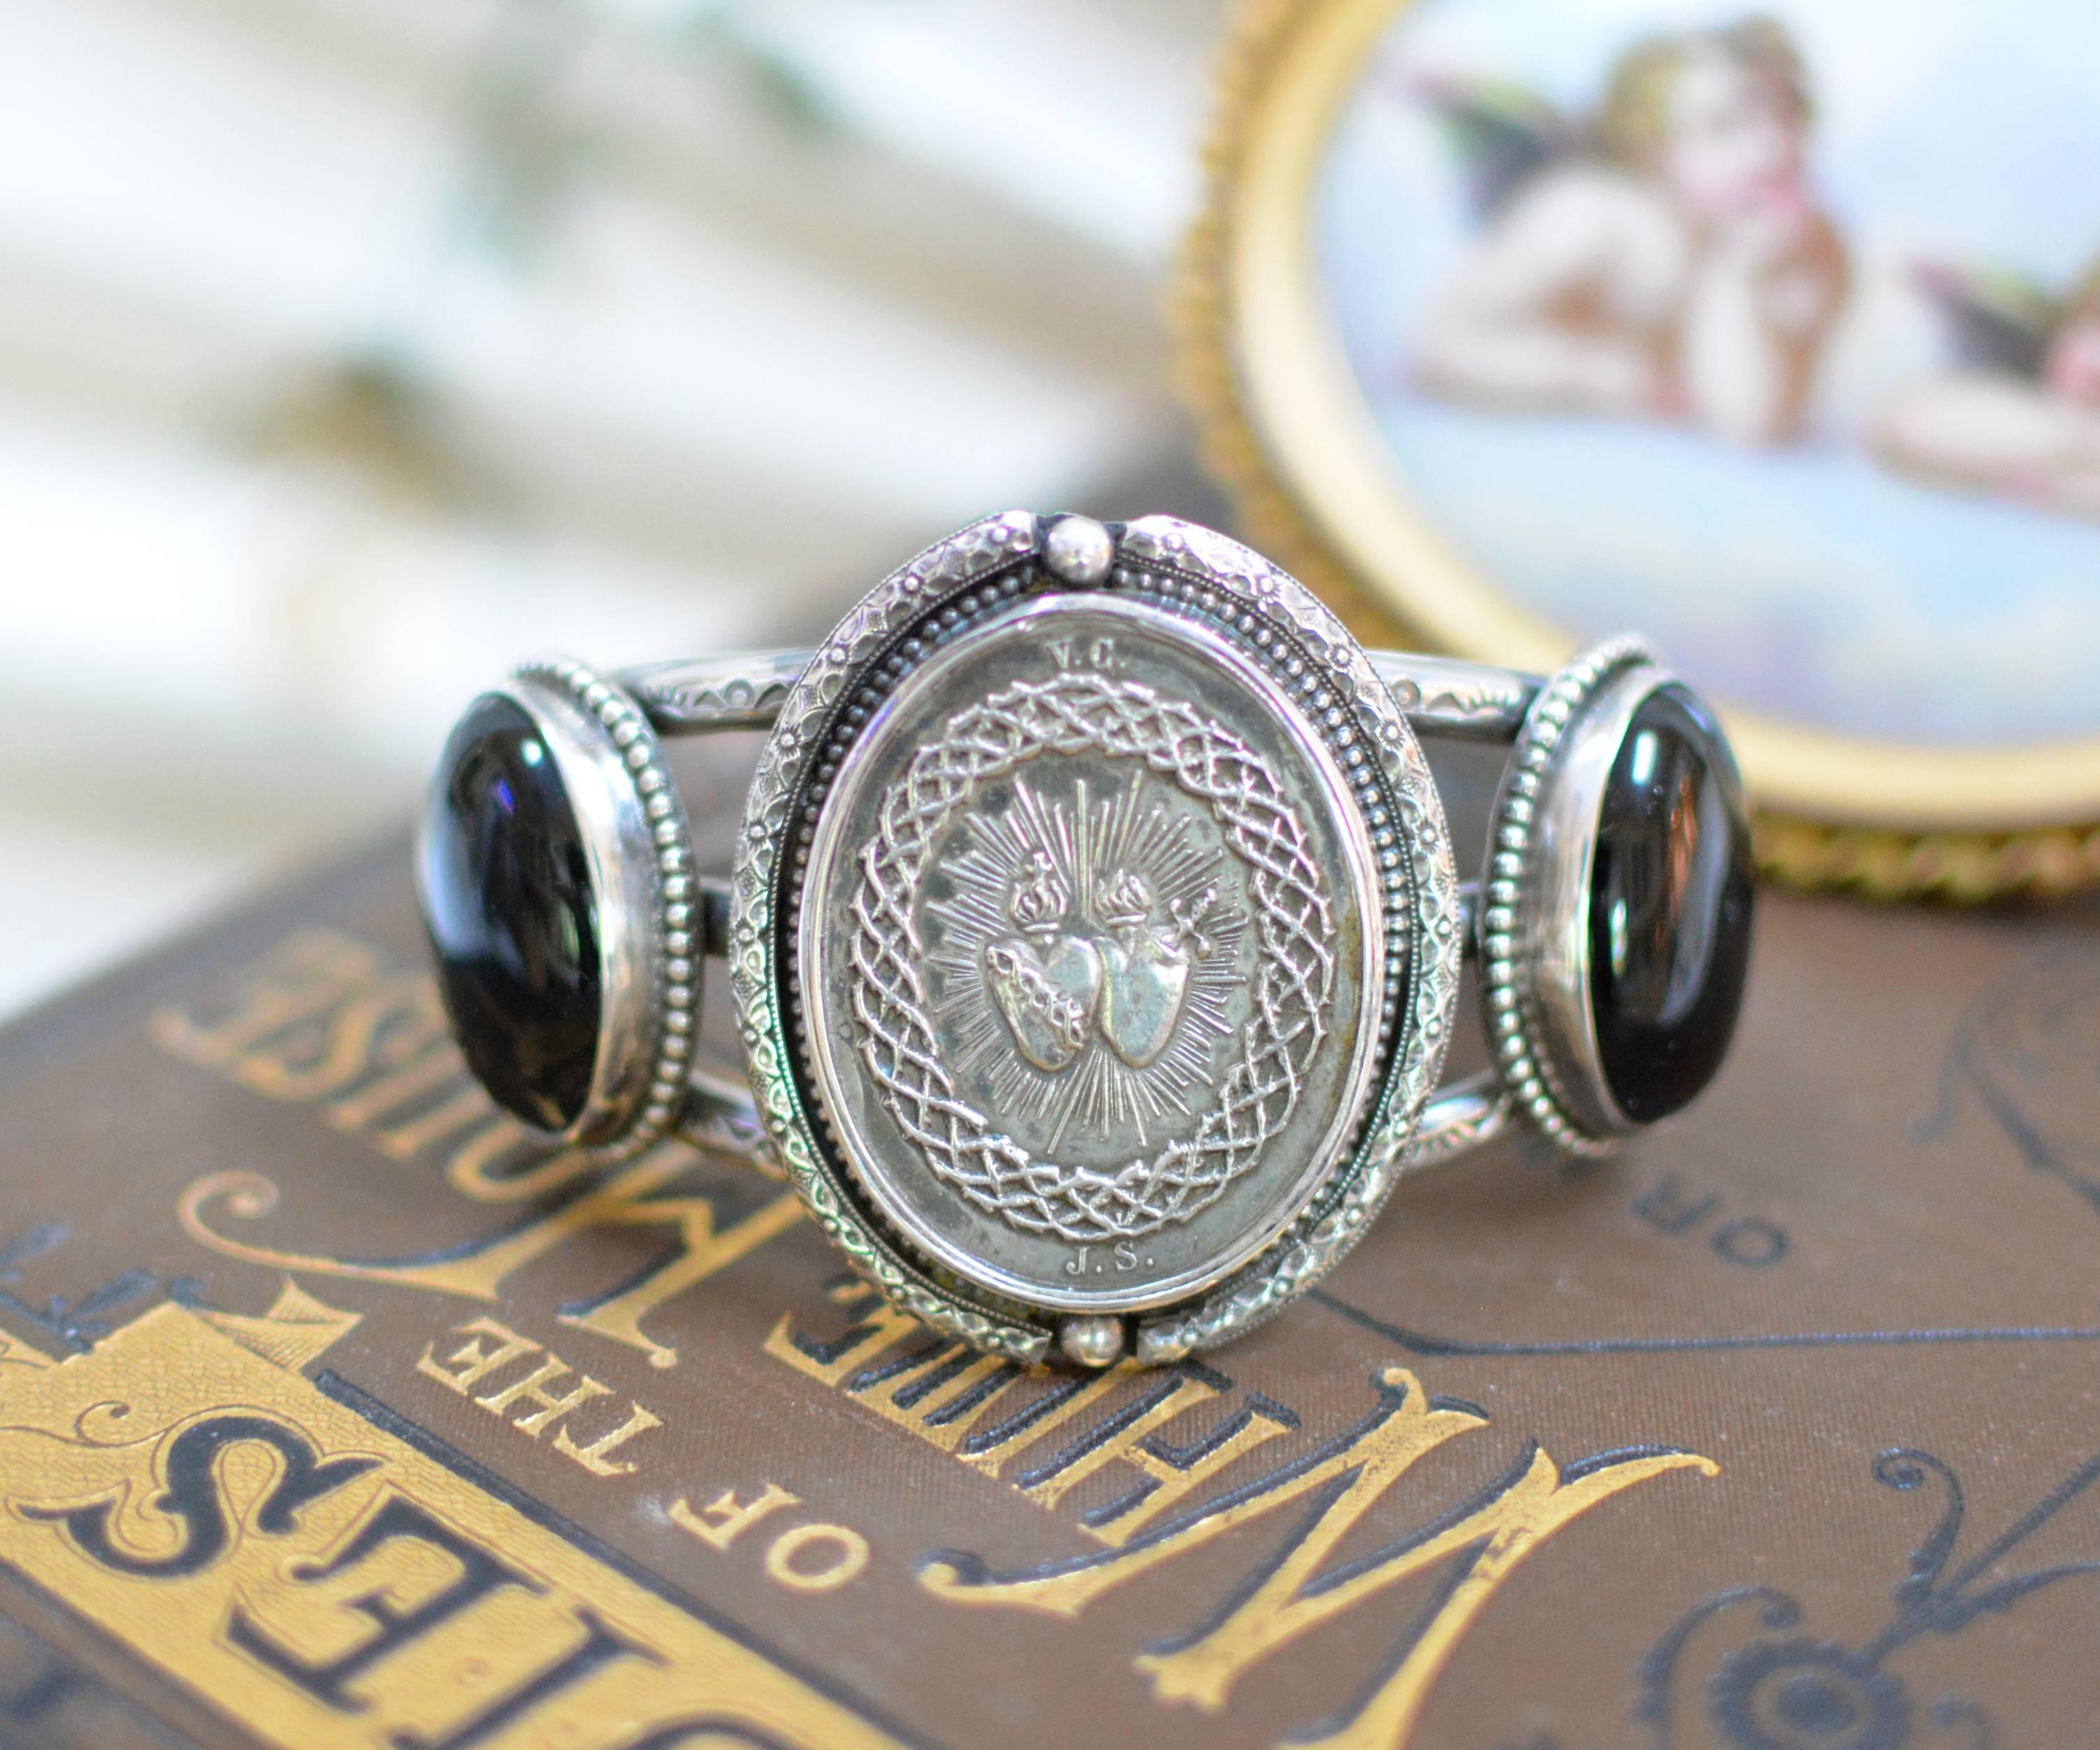 Ce bracelet unique en son genre, en argent sterling, est orné d'une médaille du Sacré-Cœur d'origine française, datant du XIXe siècle. Encadré de gravures et de perles ornementales, nous avons utilisé une paire de cabochons en onyx noir naturel de